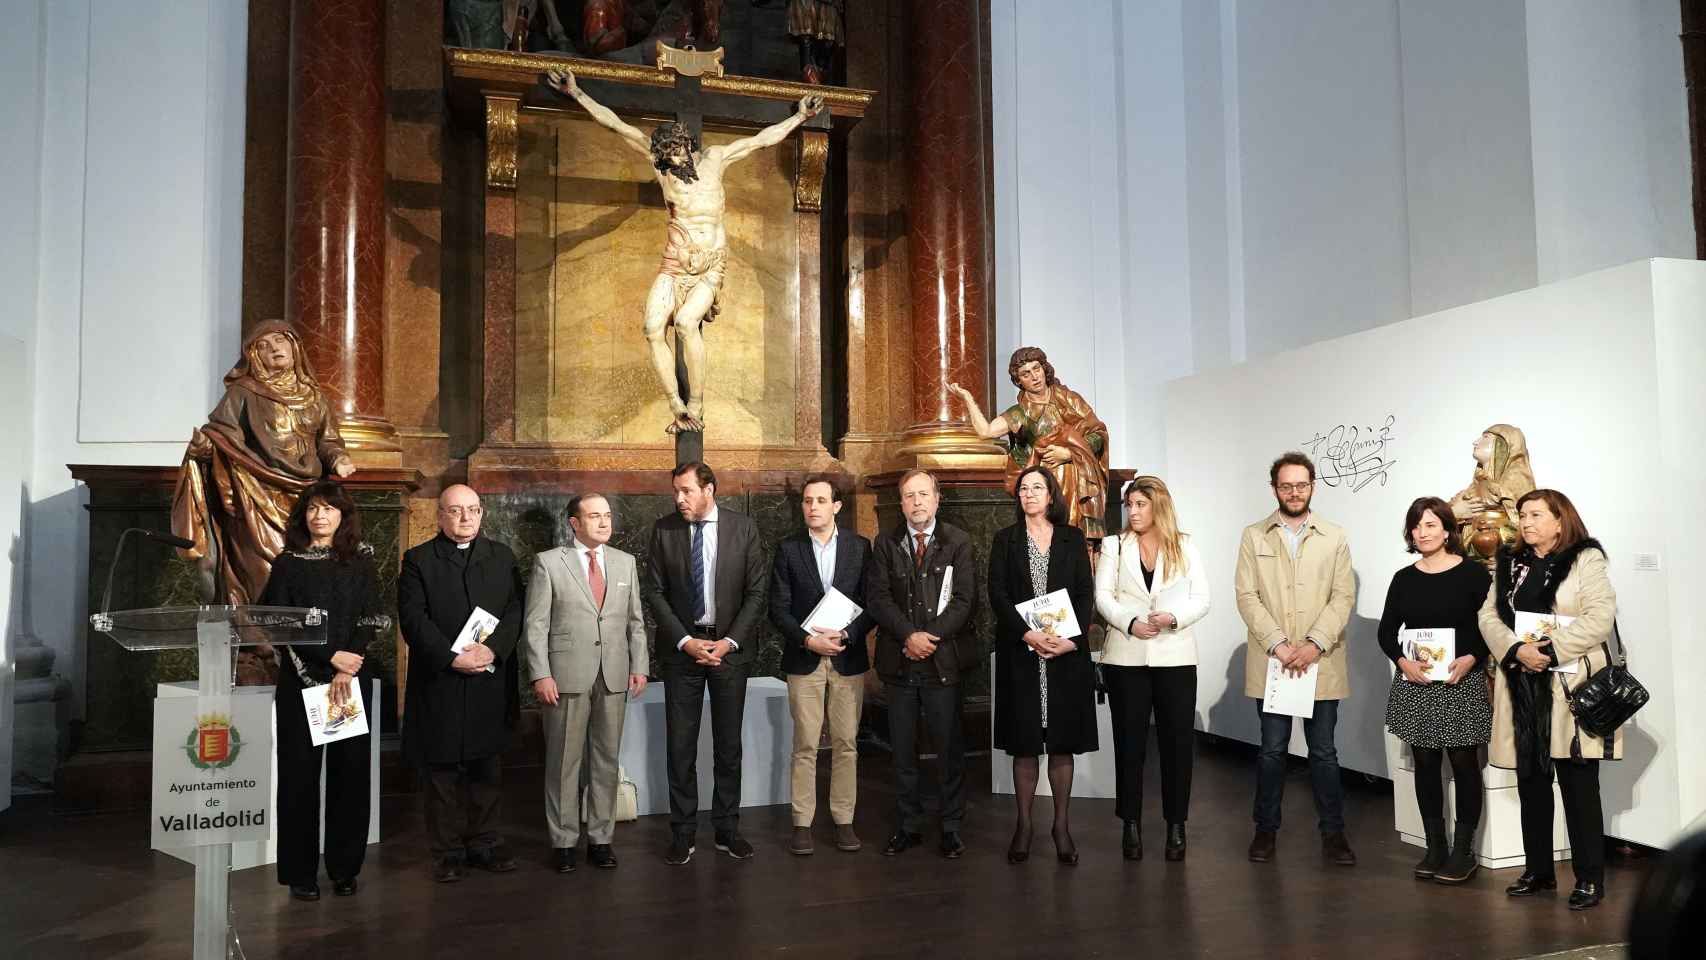 El alcalde de Valladolid, Óscar Puente, y el presidente de la Diputación, Conrado Íscar, inauguran la exposición 'Juni Imaginario', organizada por la Junta de Cofradías de Semana Santa